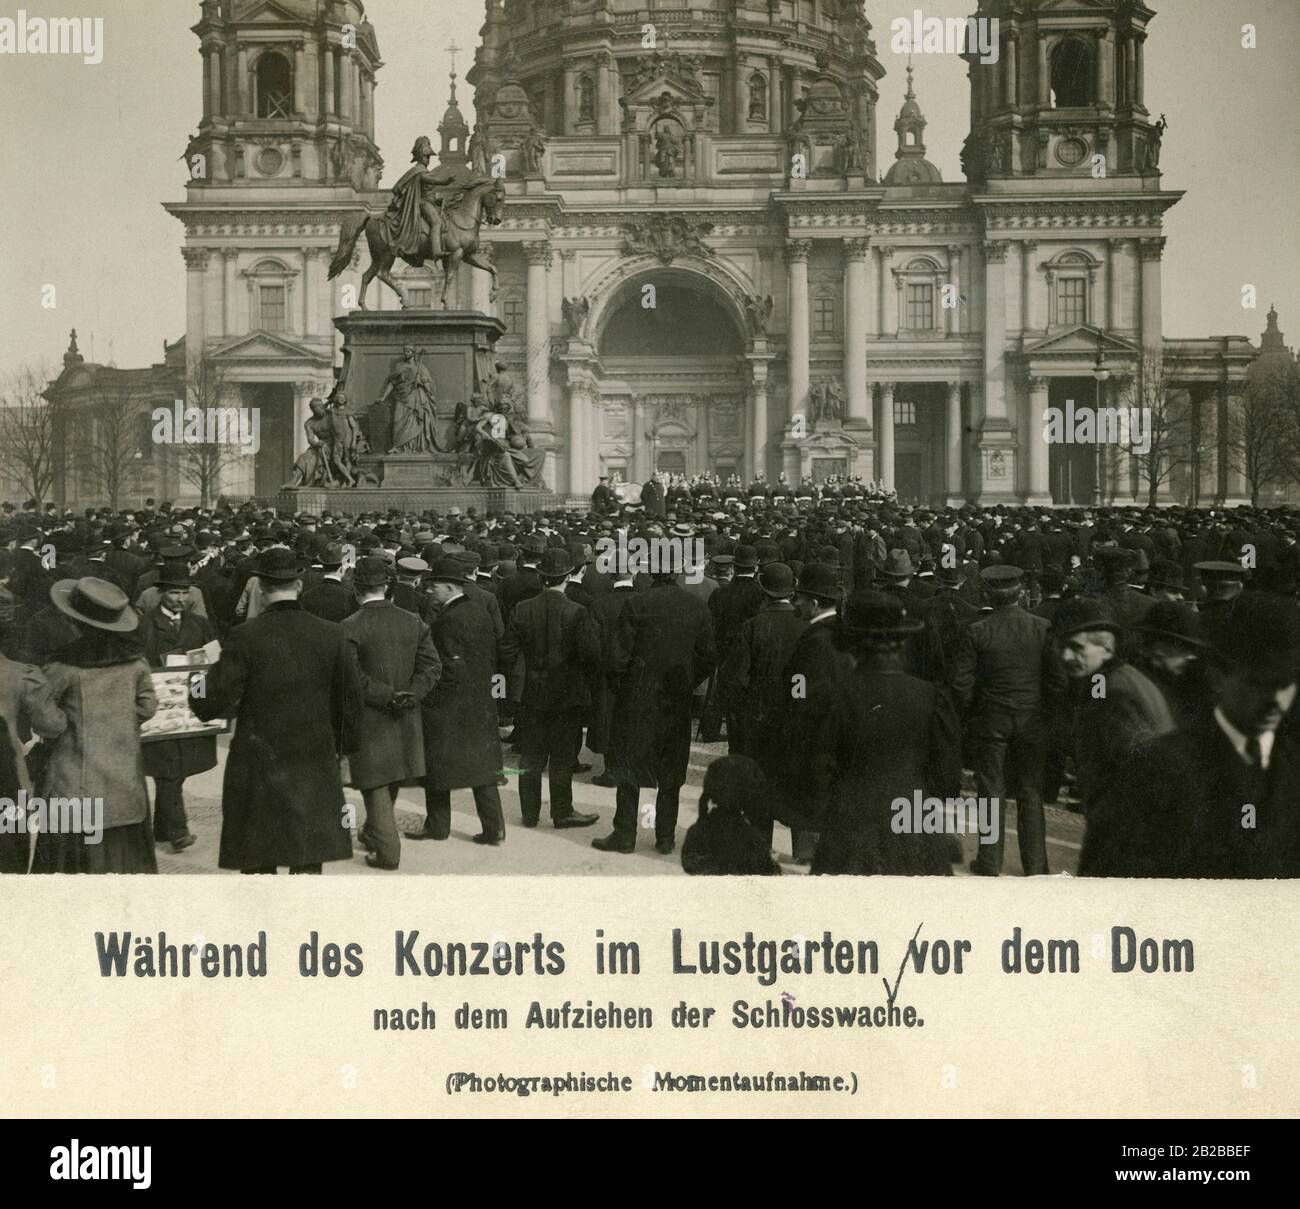 Un concert dans le Lustgarten en face de la cathédrale de Berlin après le mont de la garde du château. La statue équestre en l'honneur de Friedrich Wilhelm III est reconnaissable sur l'image. Banque D'Images